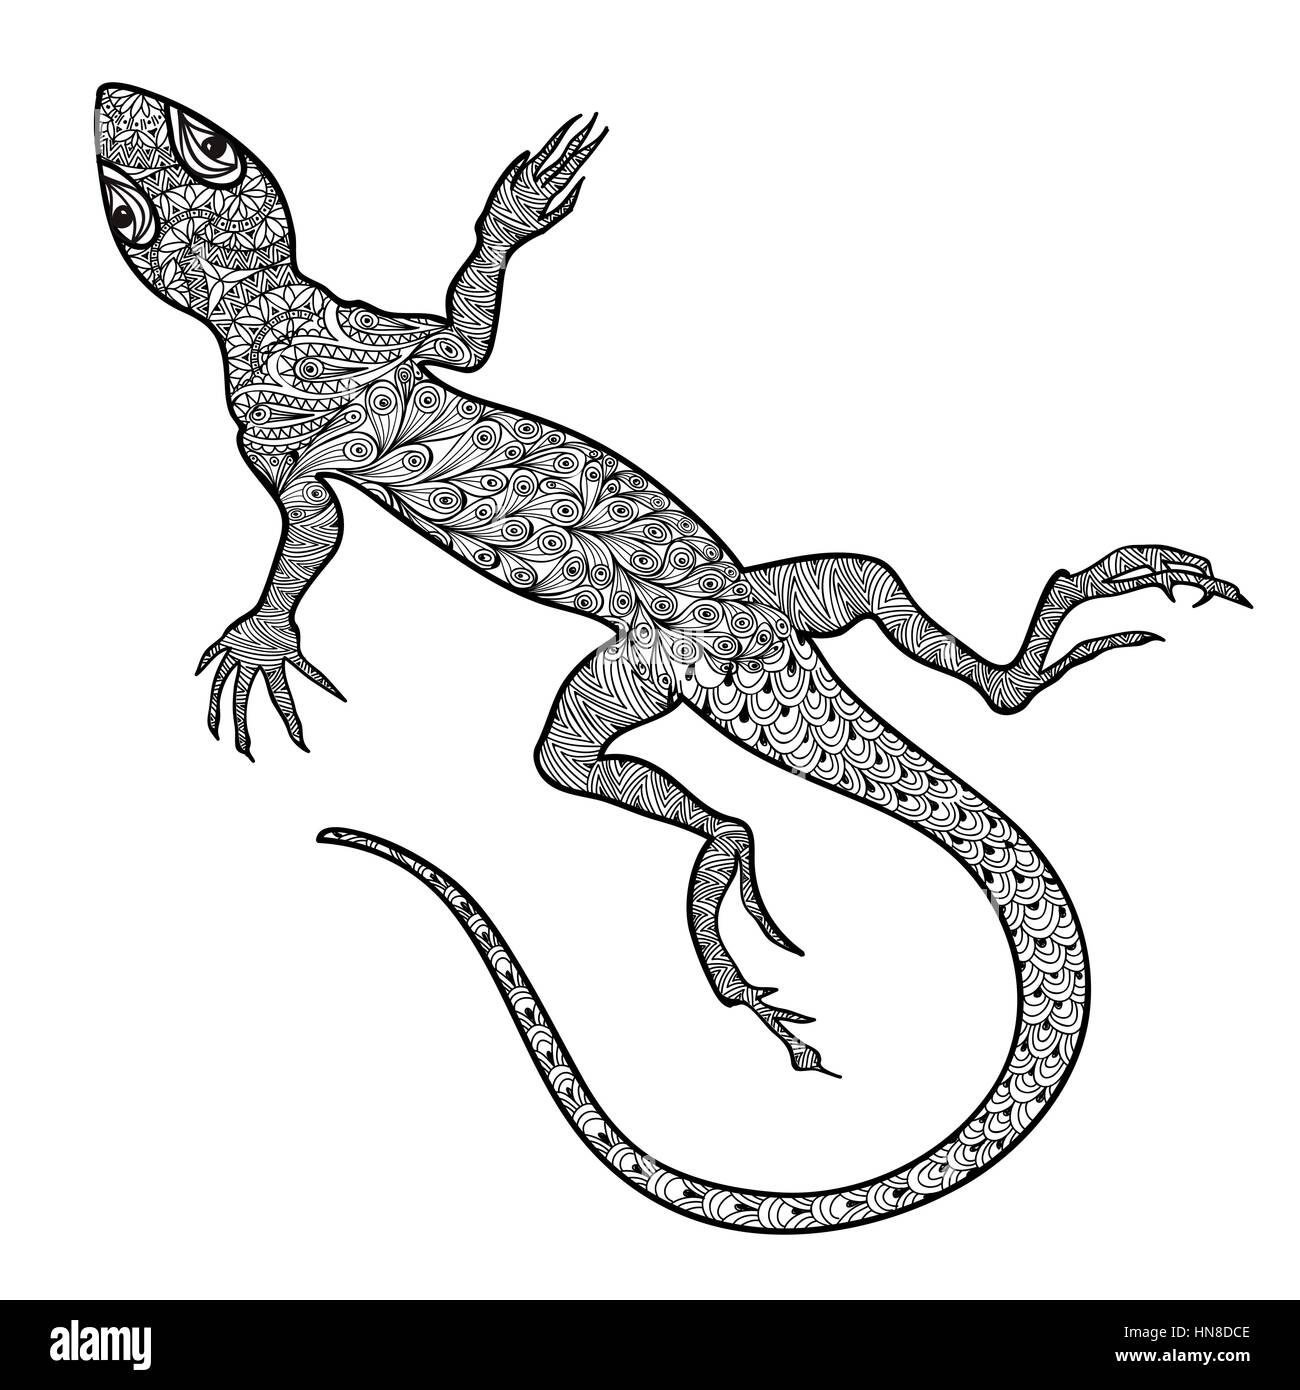 Lizard isoliert. Hand gezeichnet Vektor Salamander mit ethnischen tribal Zierpflanzen zentagle Muster. Skizze von Eidechsen Reptilien mit langen gebogenen Schwanz Stock Vektor